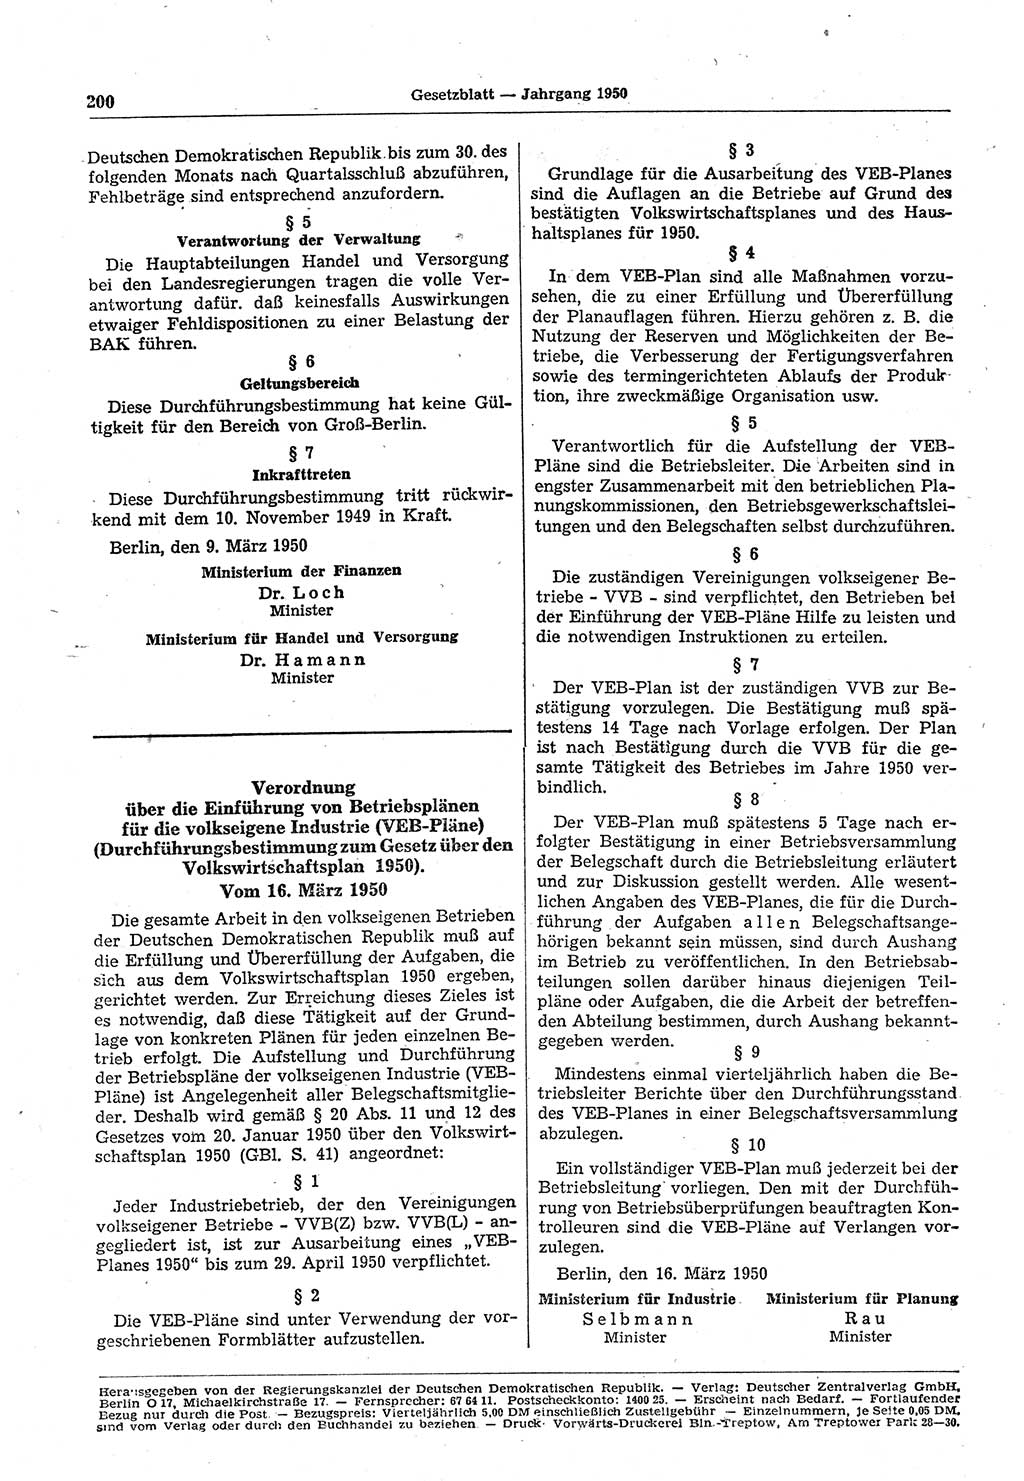 Gesetzblatt (GBl.) der Deutschen Demokratischen Republik (DDR) 1950, Seite 200 (GBl. DDR 1950, S. 200)